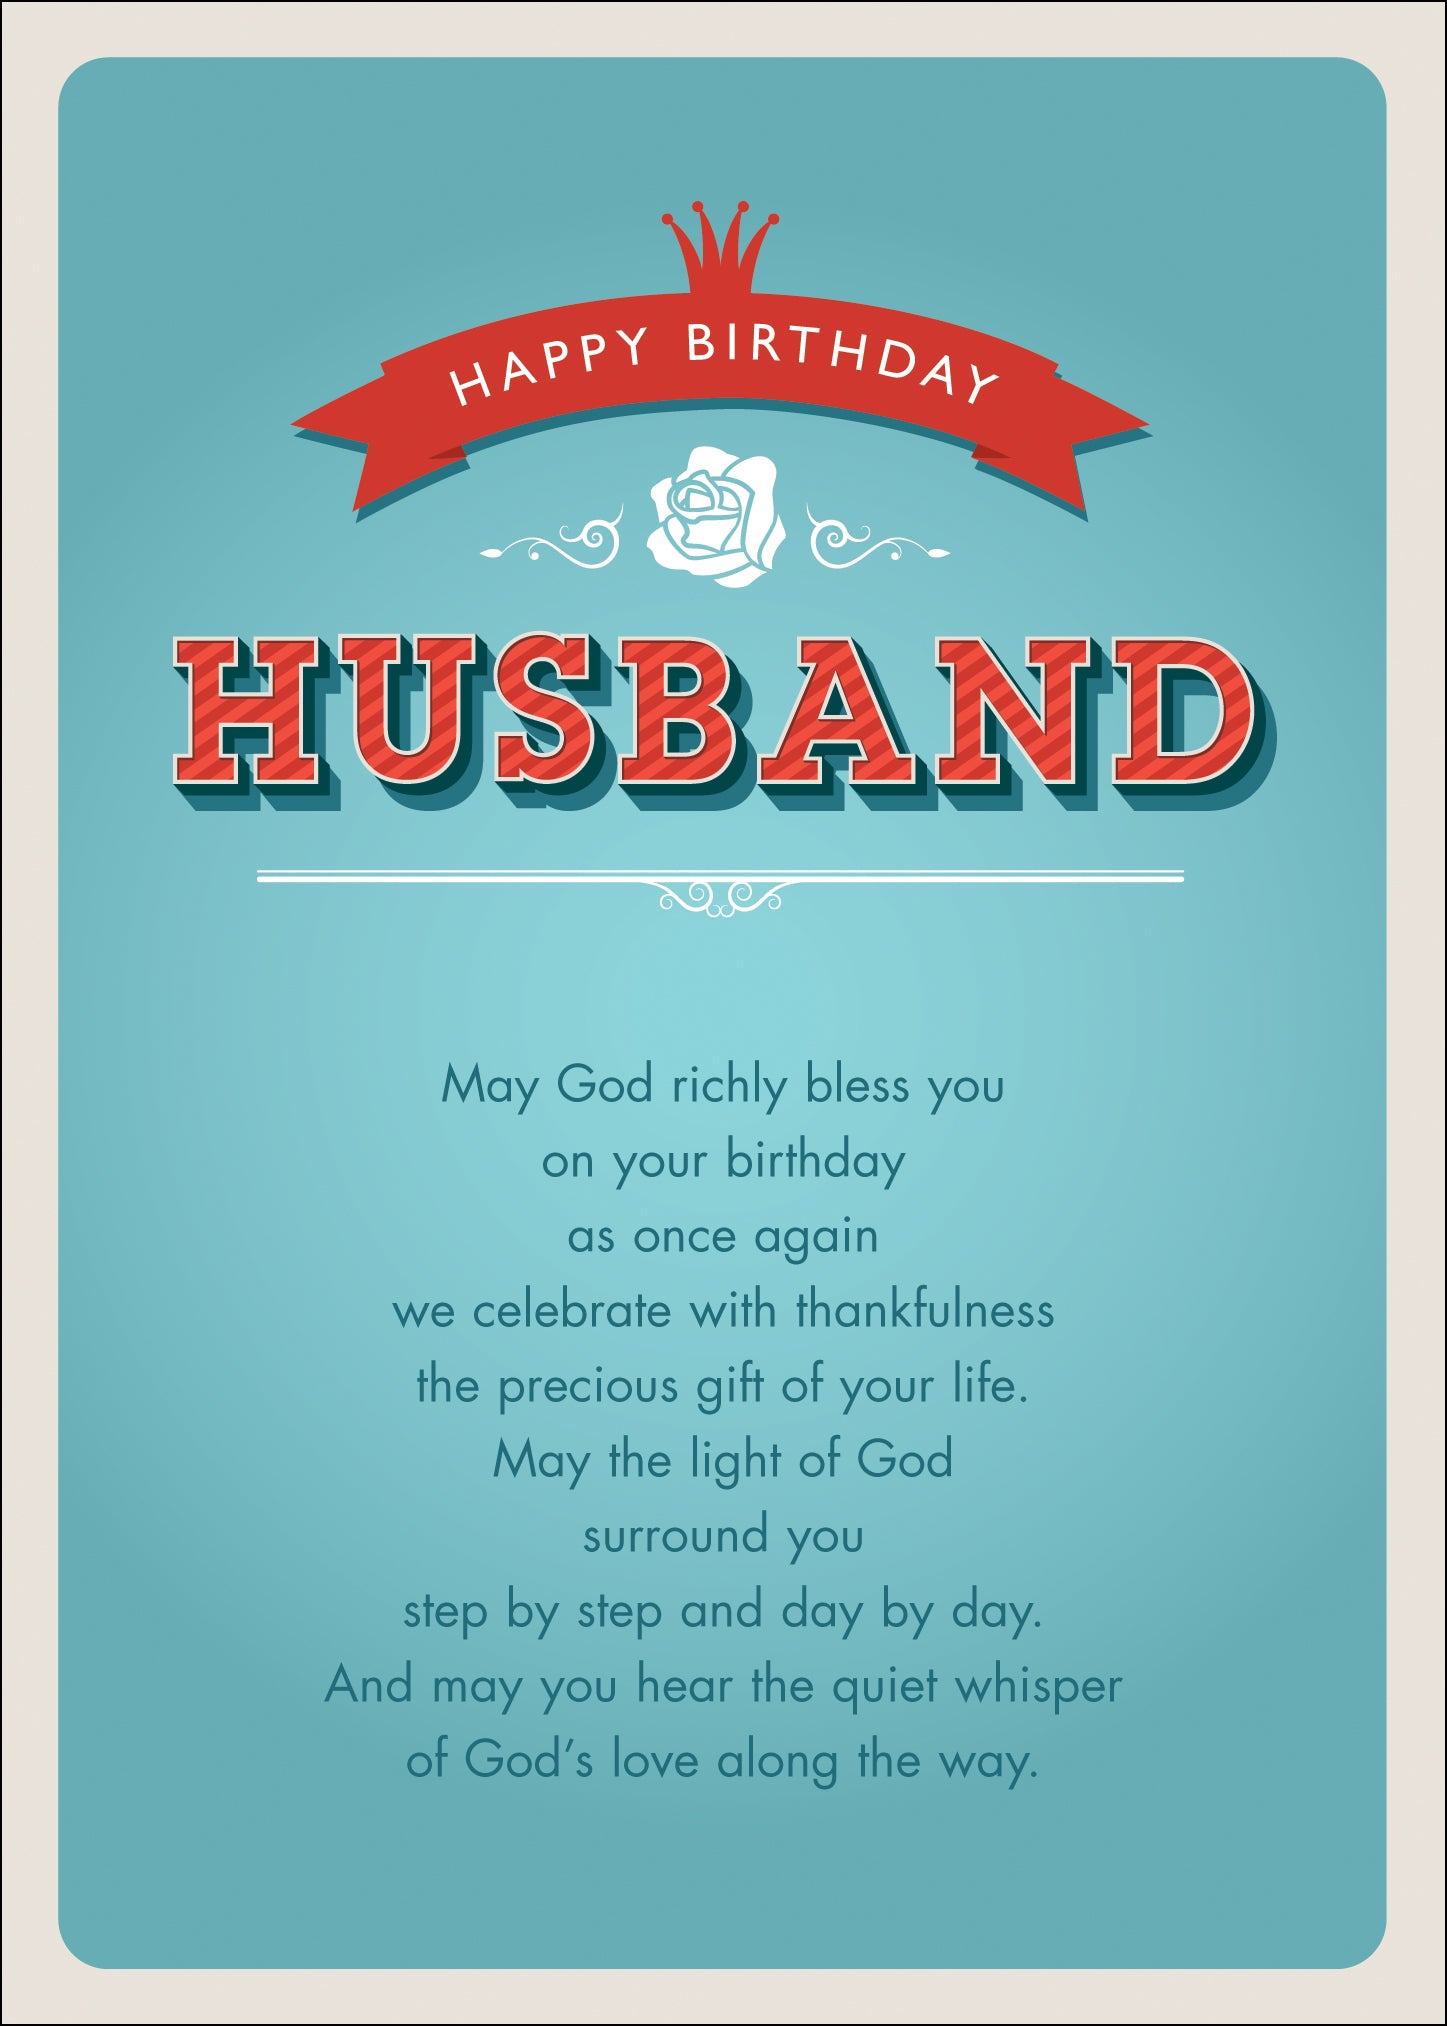 Happy Birthday - HusbandHappy Birthday - Husband